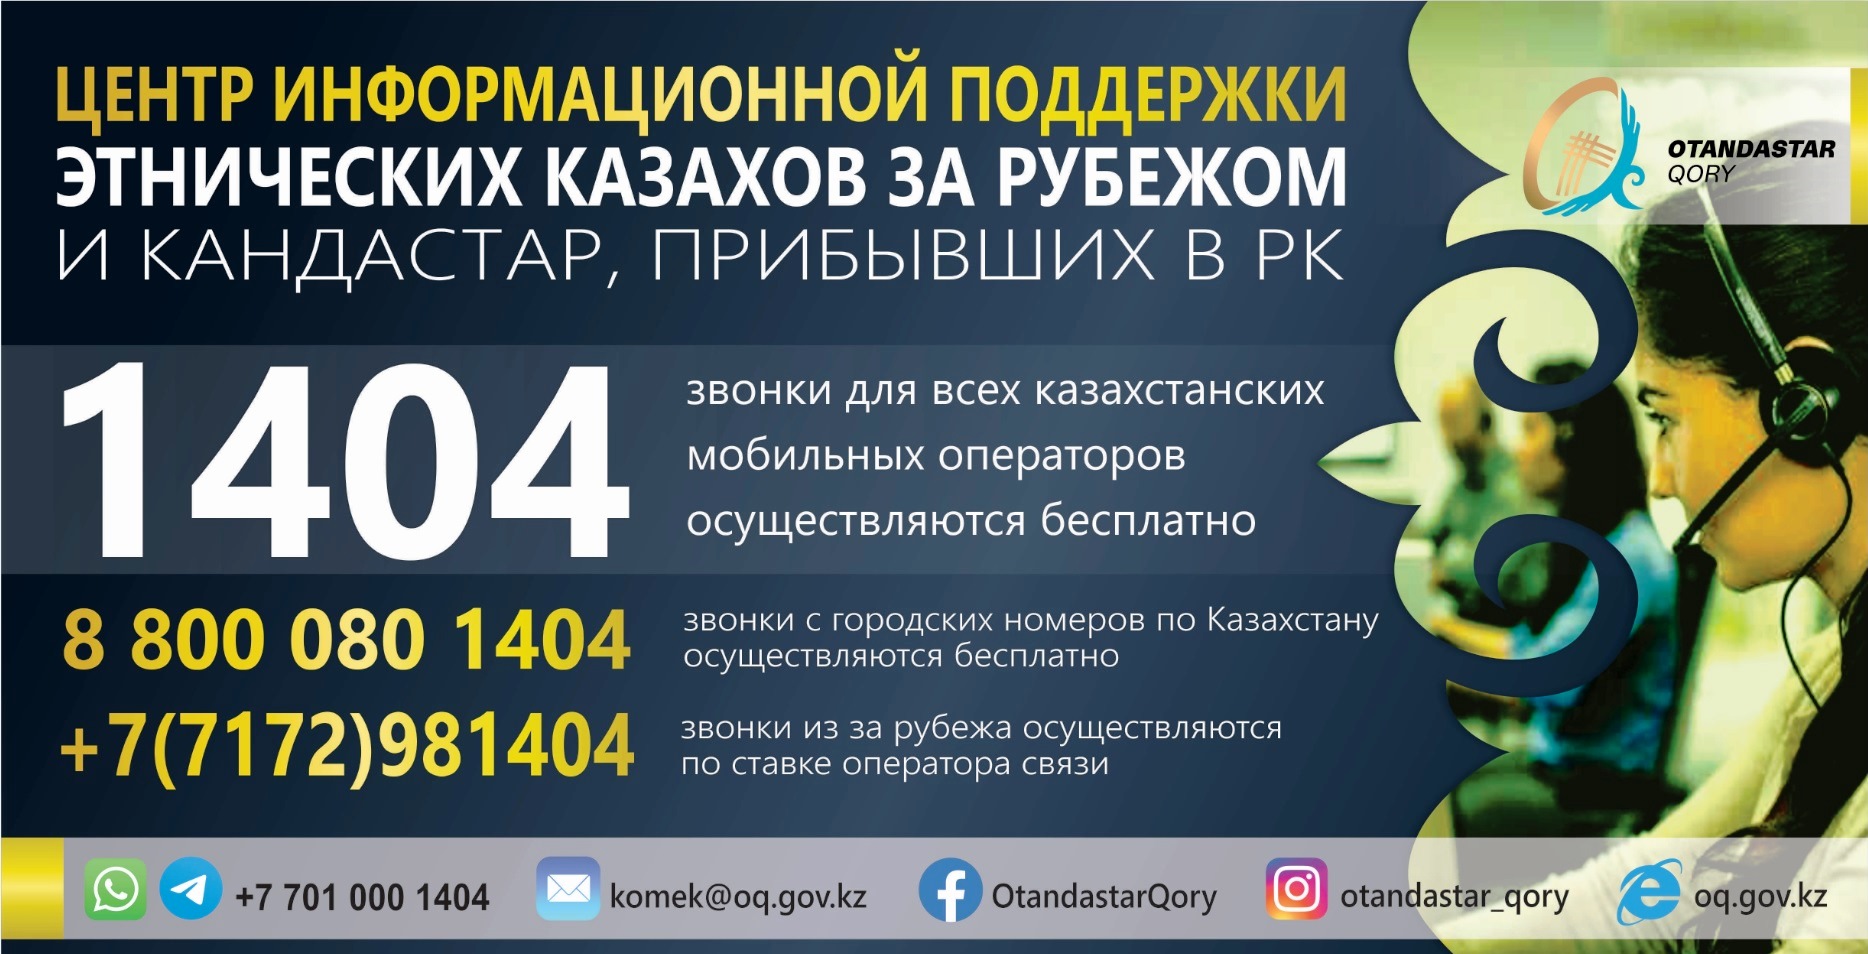 О центре информационной поддержки этнических казахов за рубежом и кандастар, прибывших в РК